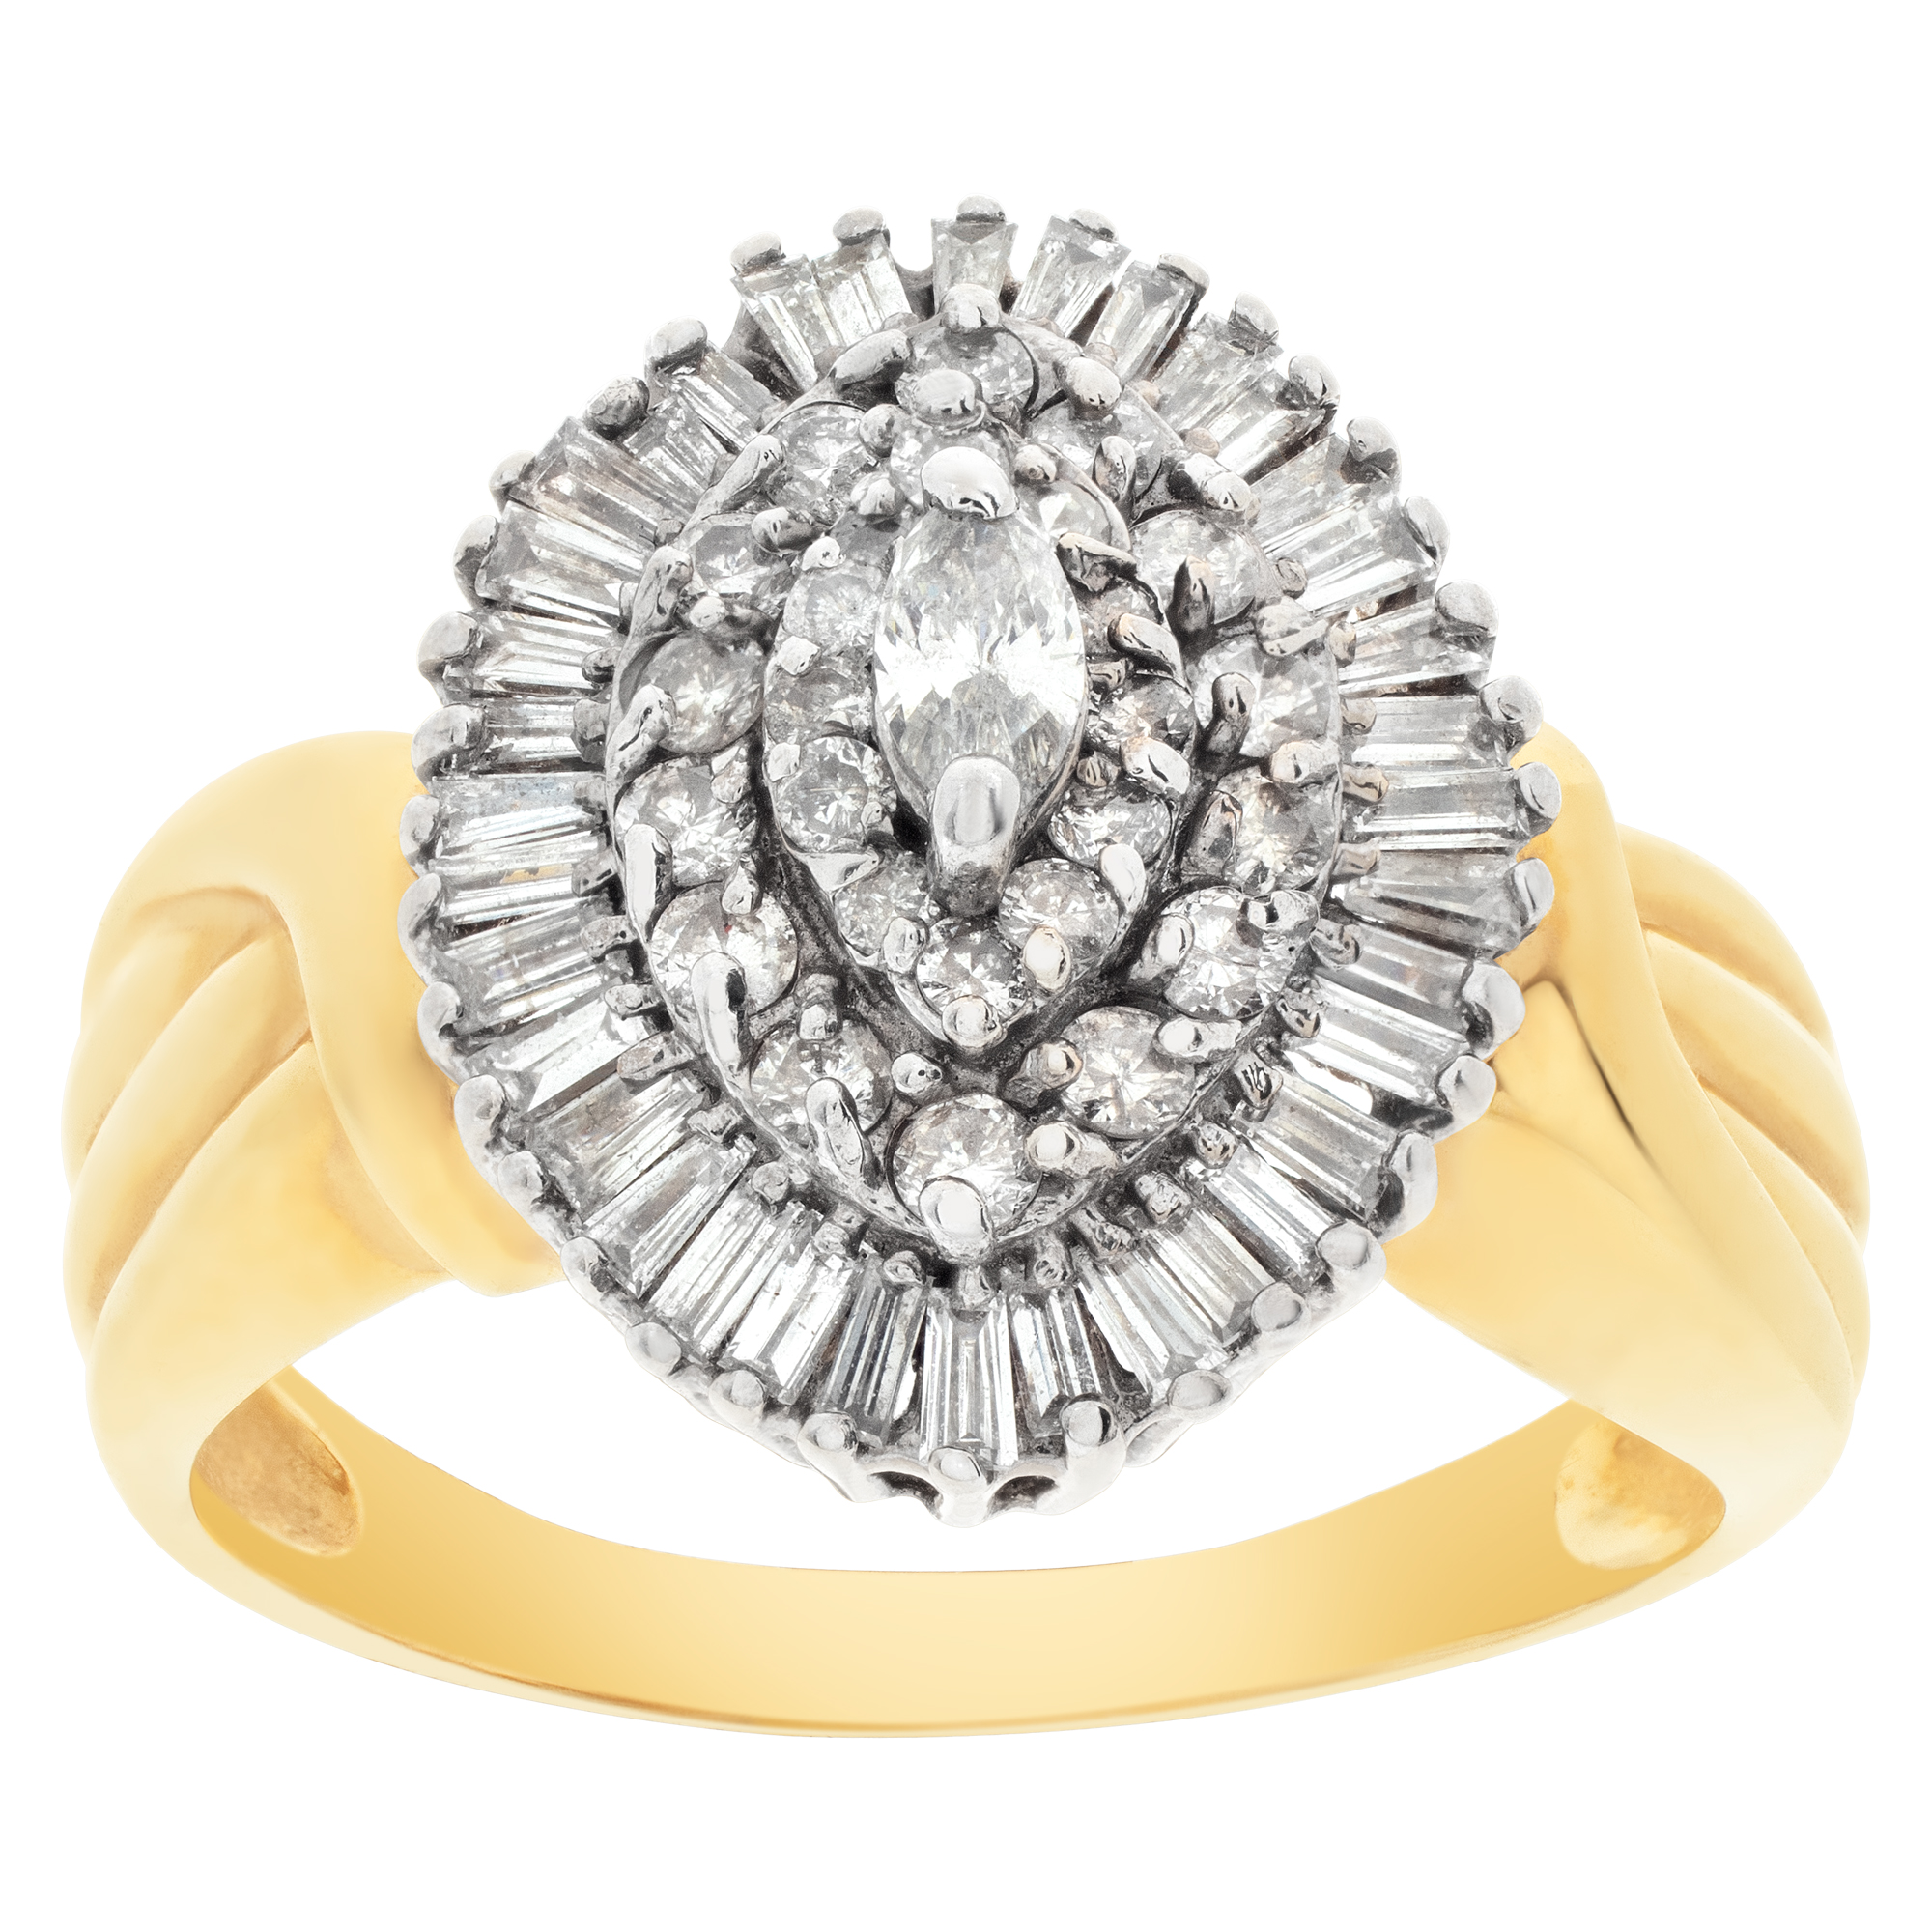 Ballerina diamond ring in 14k gold. 1.42 carats in diamonds. Size 9